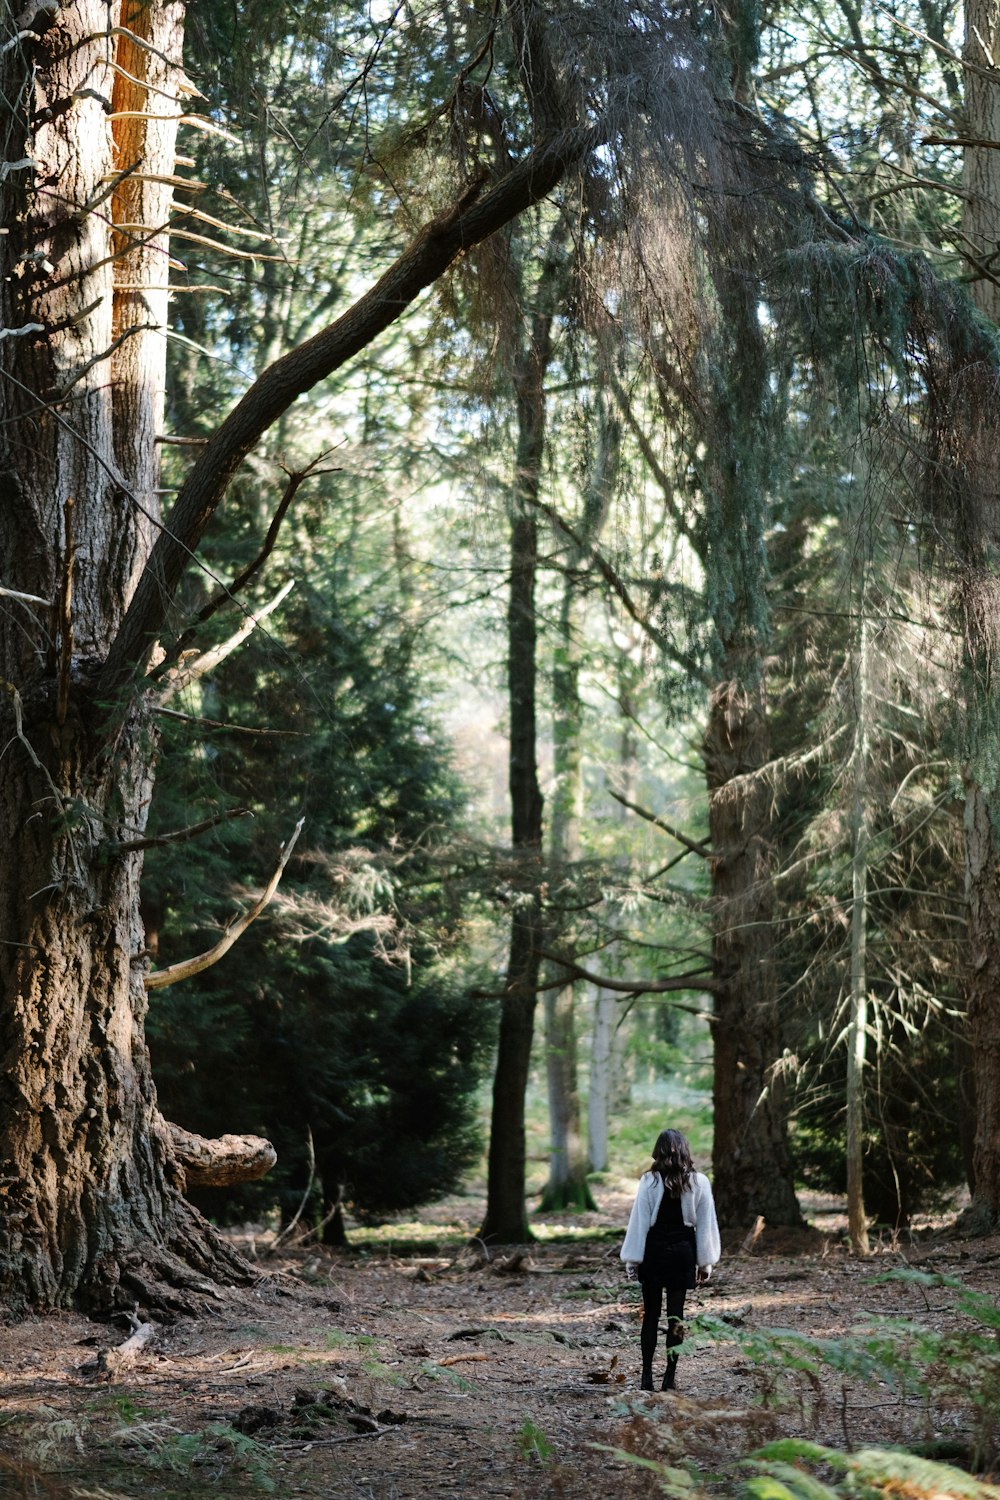 Mujer de pie en el bosque